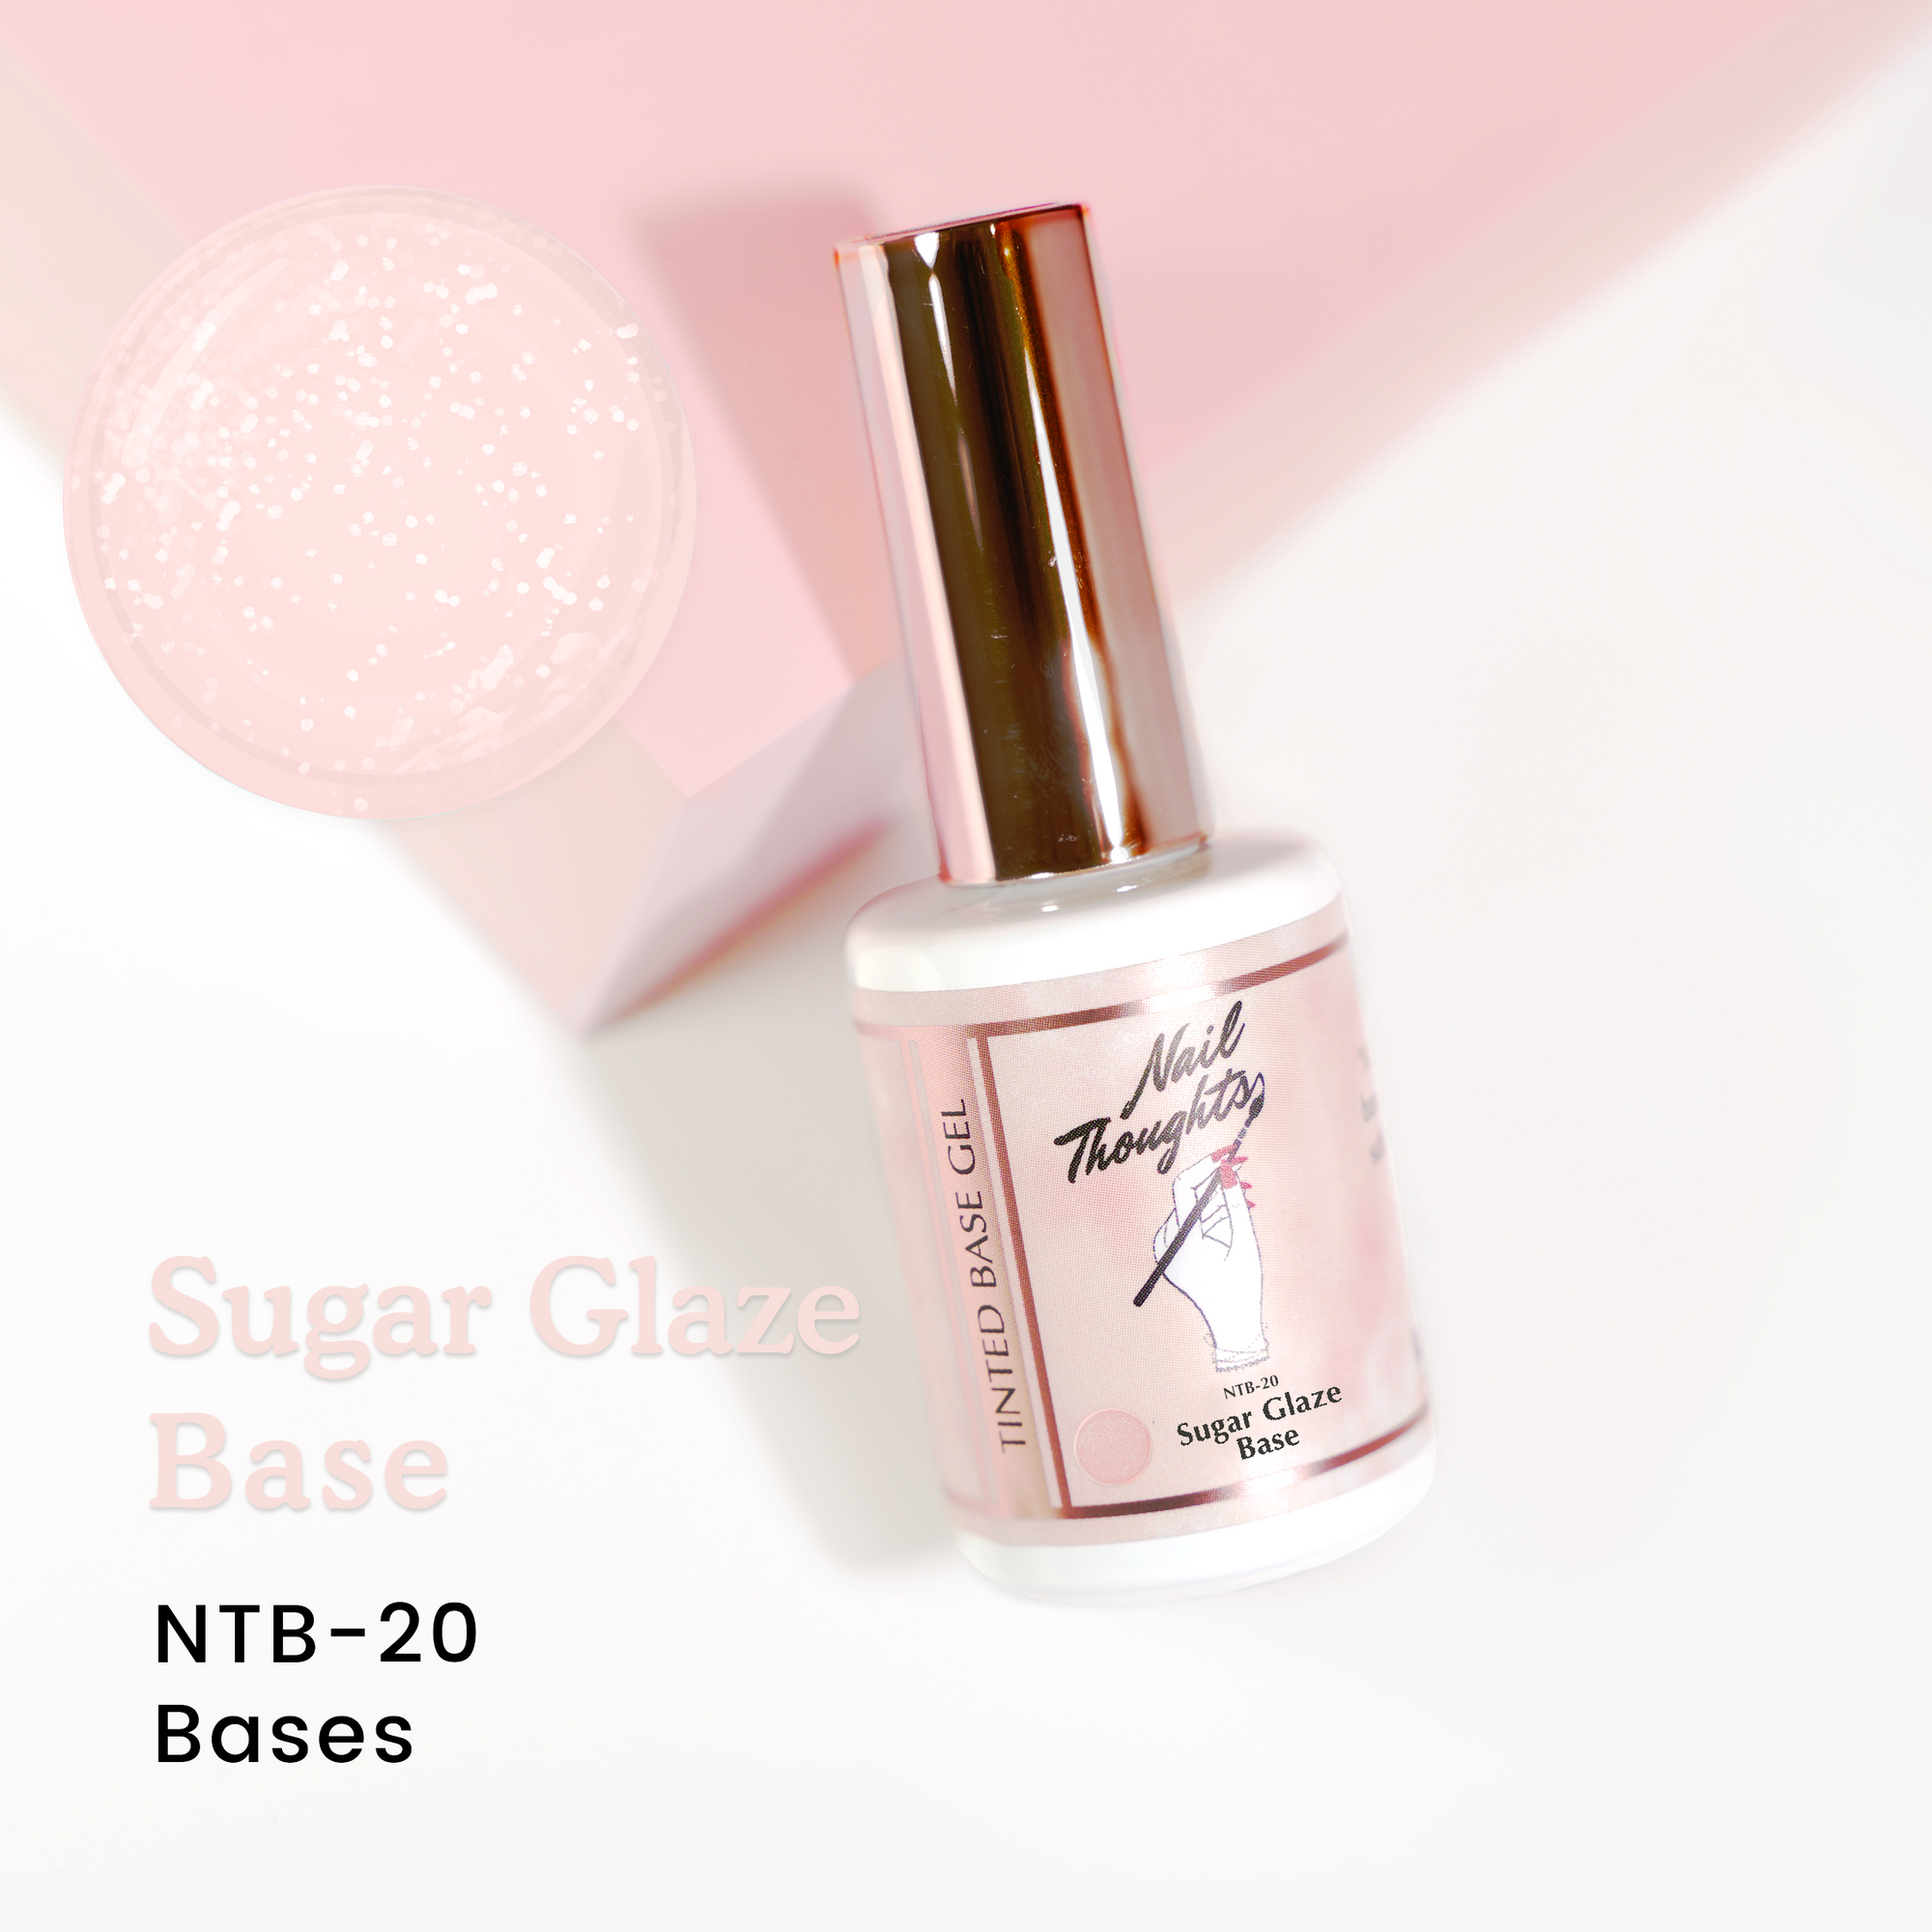 Sugar Glaze Base NTB-20